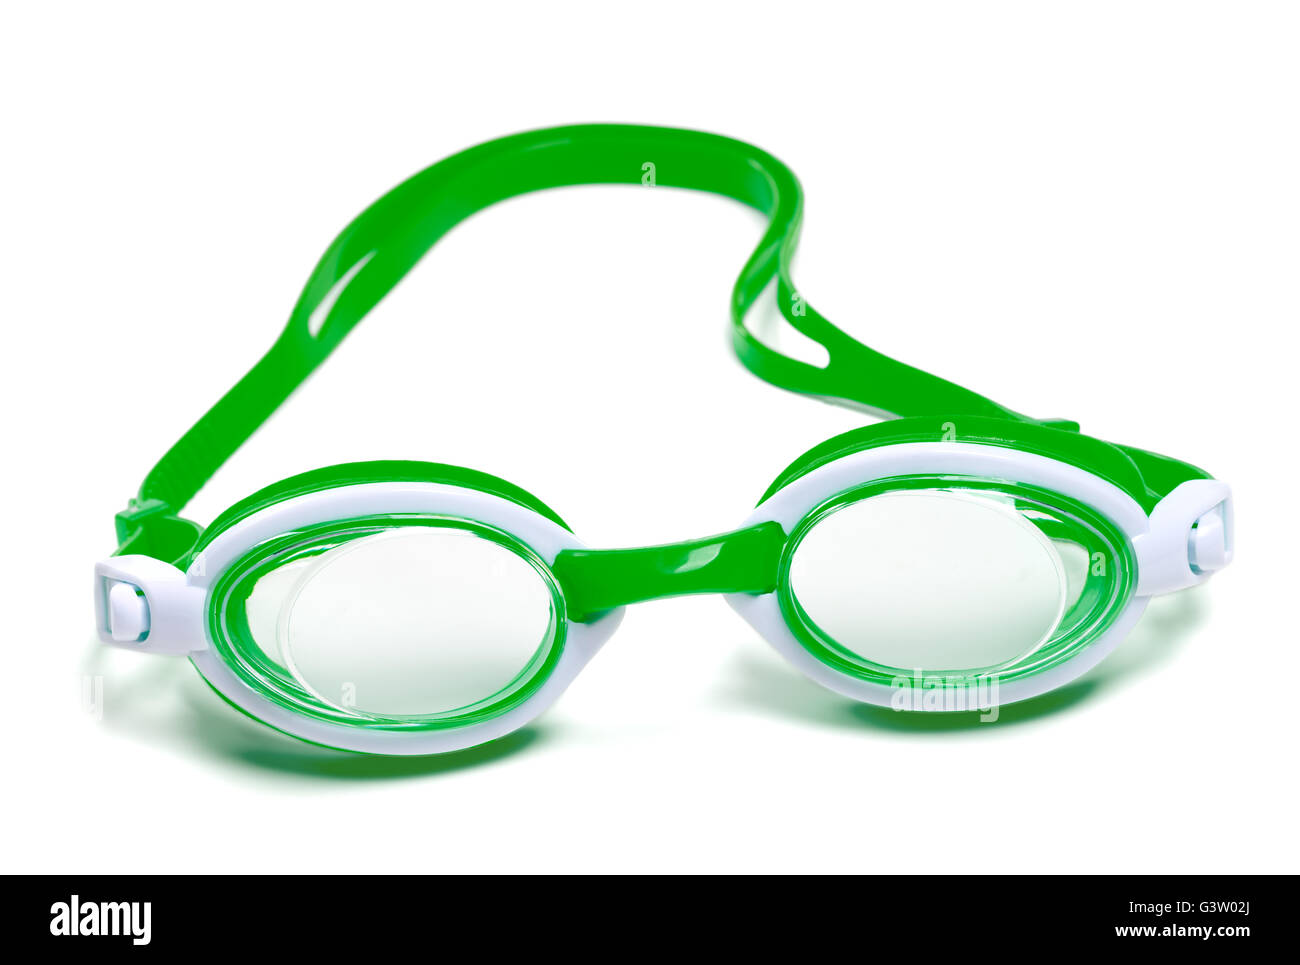 Occhiali per nuoto isolati su sfondo bianco Foto Stock